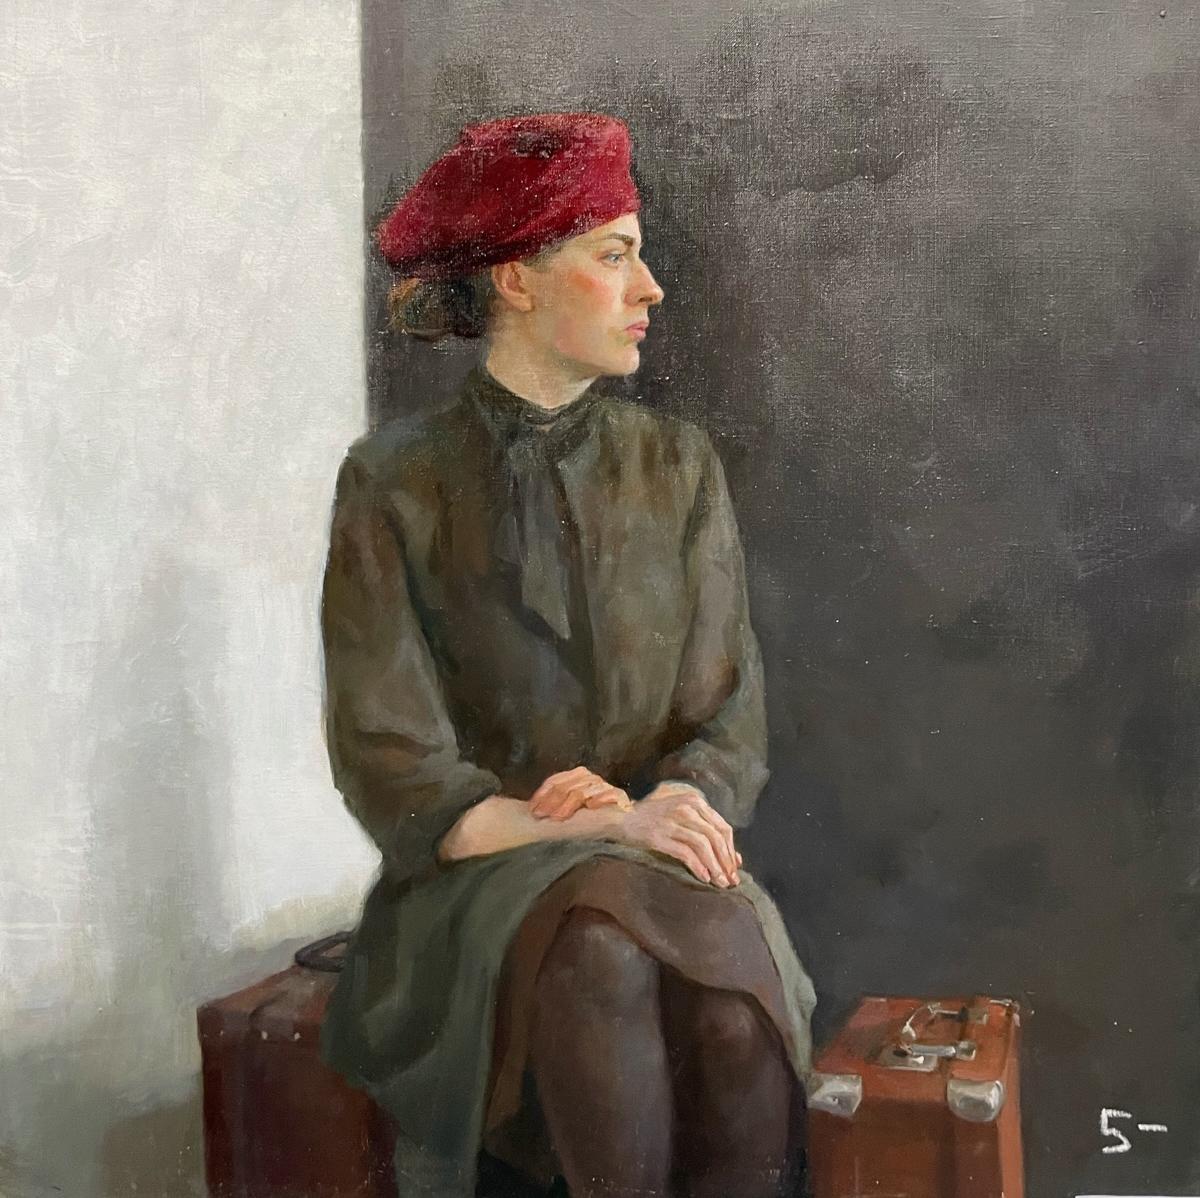 Прокопец A. Original modern art painting